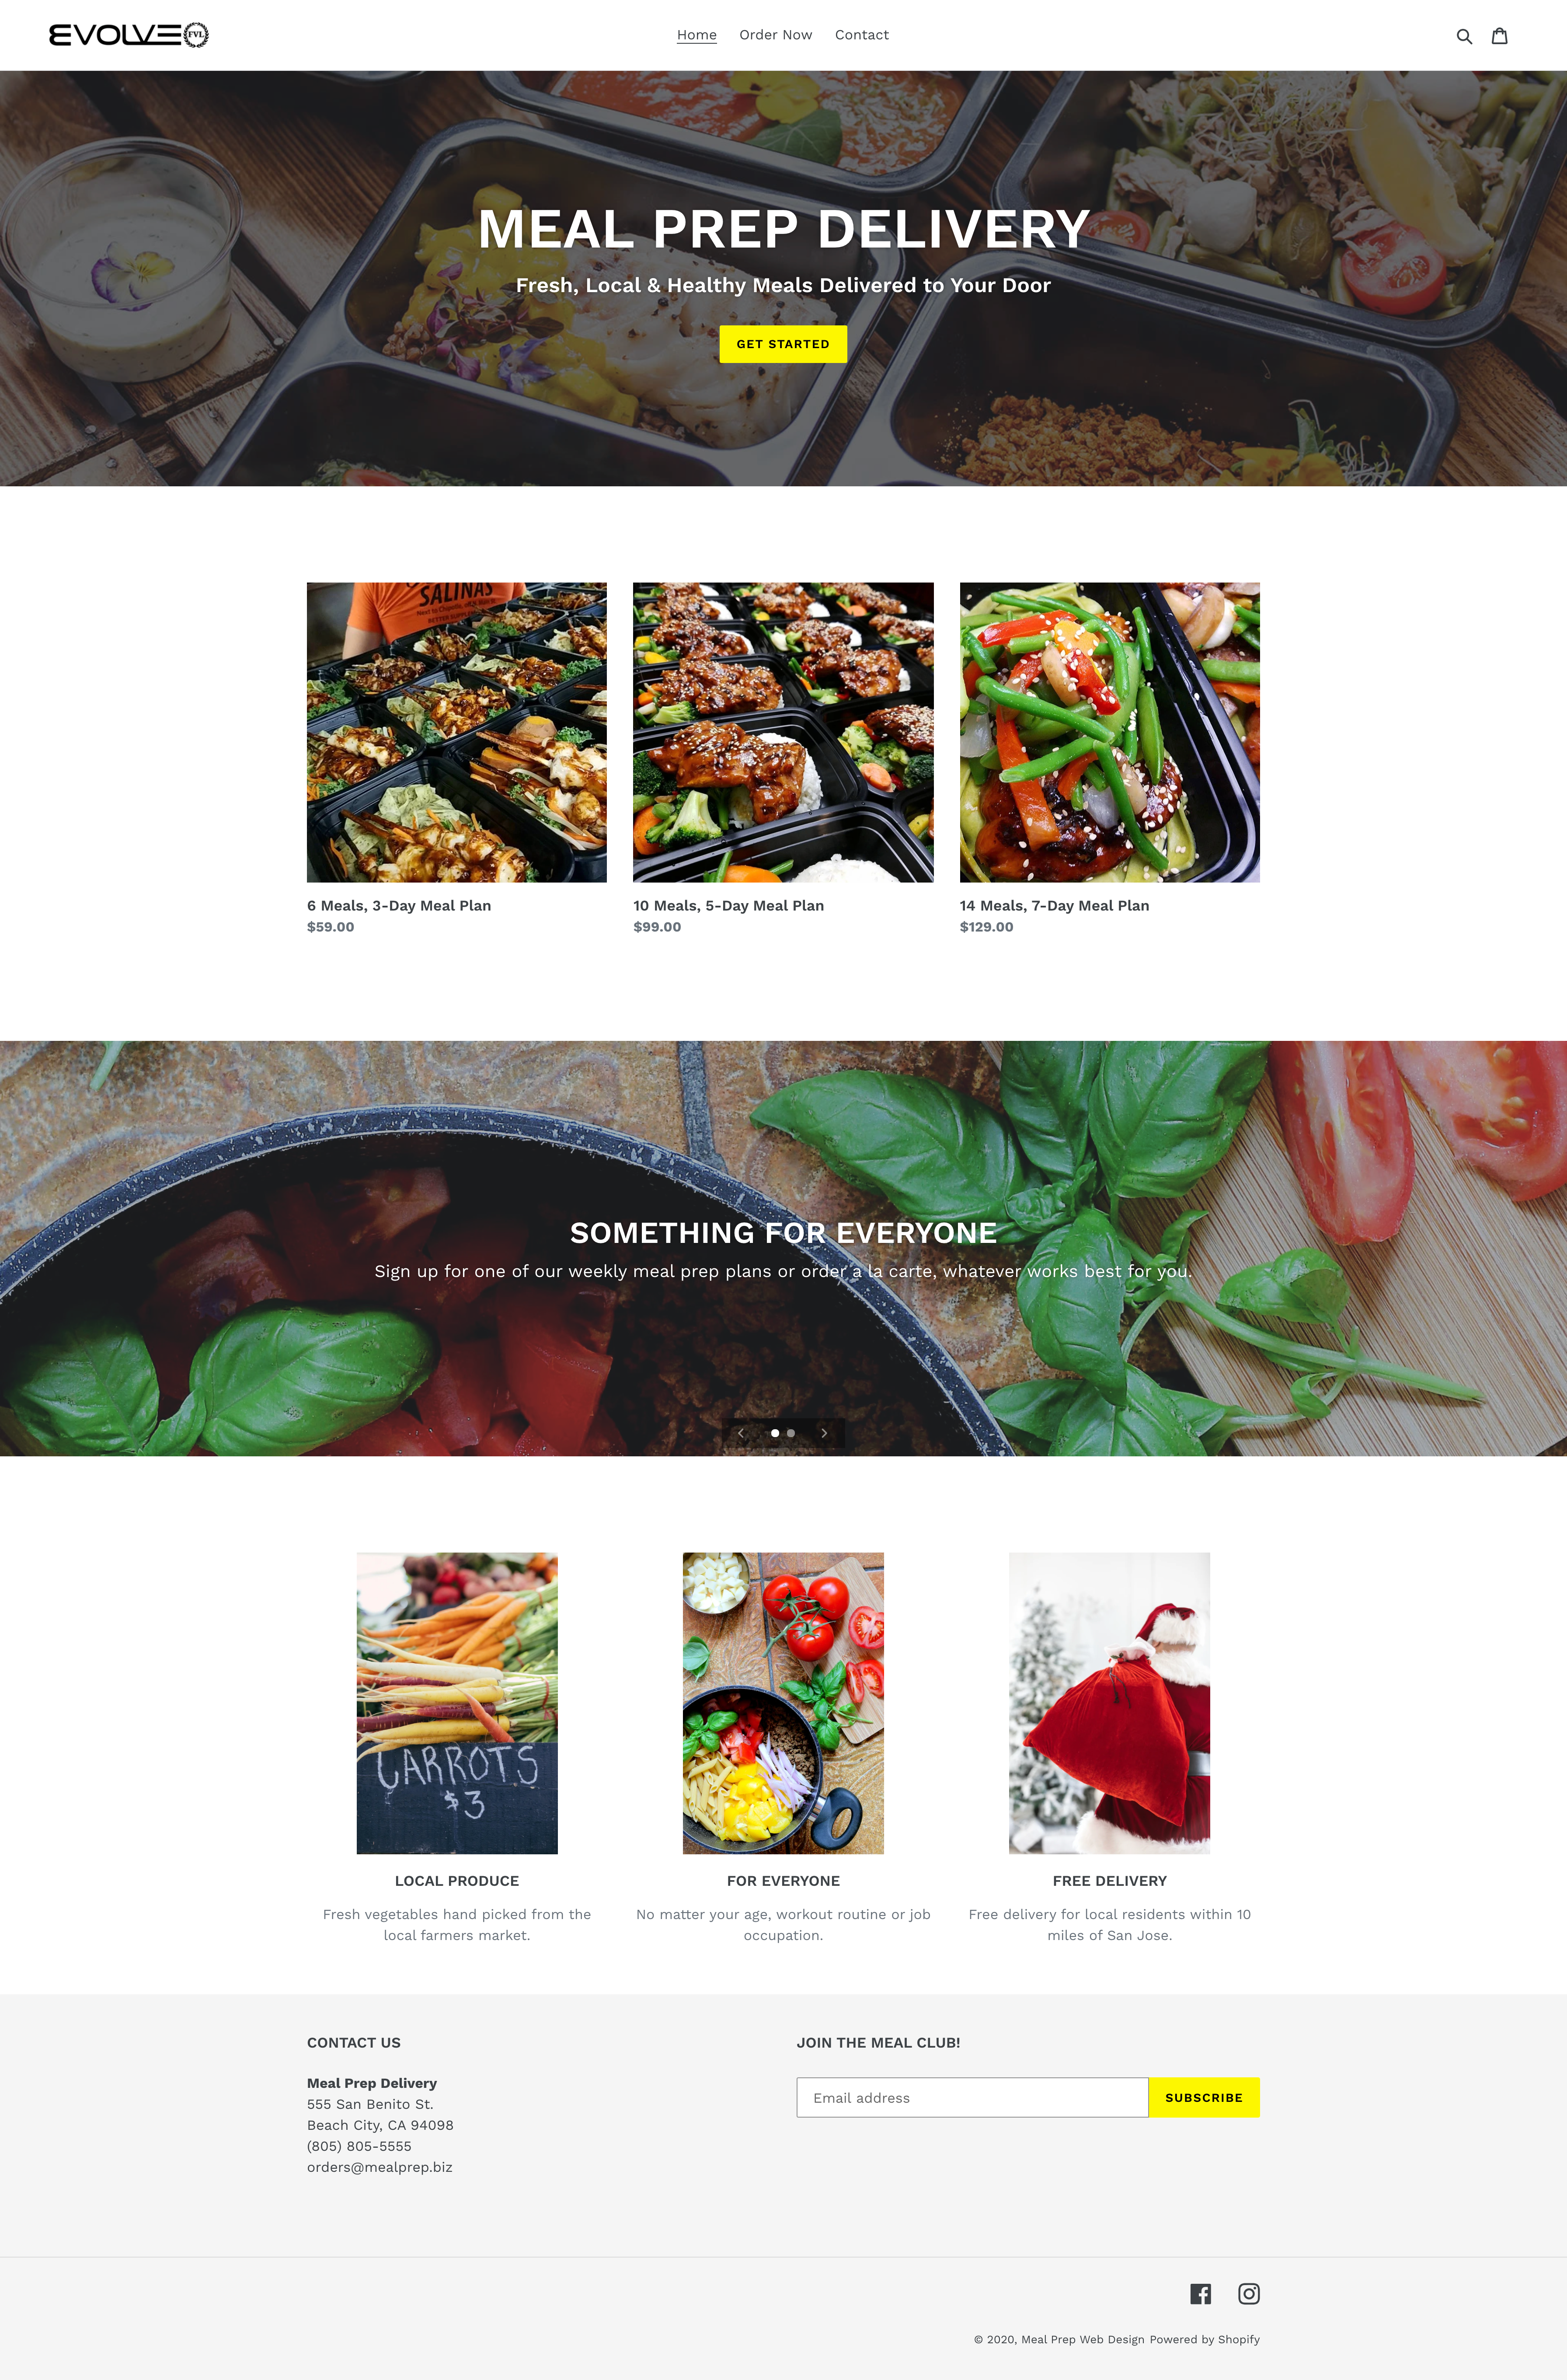 Evolve FVL Meal Prep Website Design